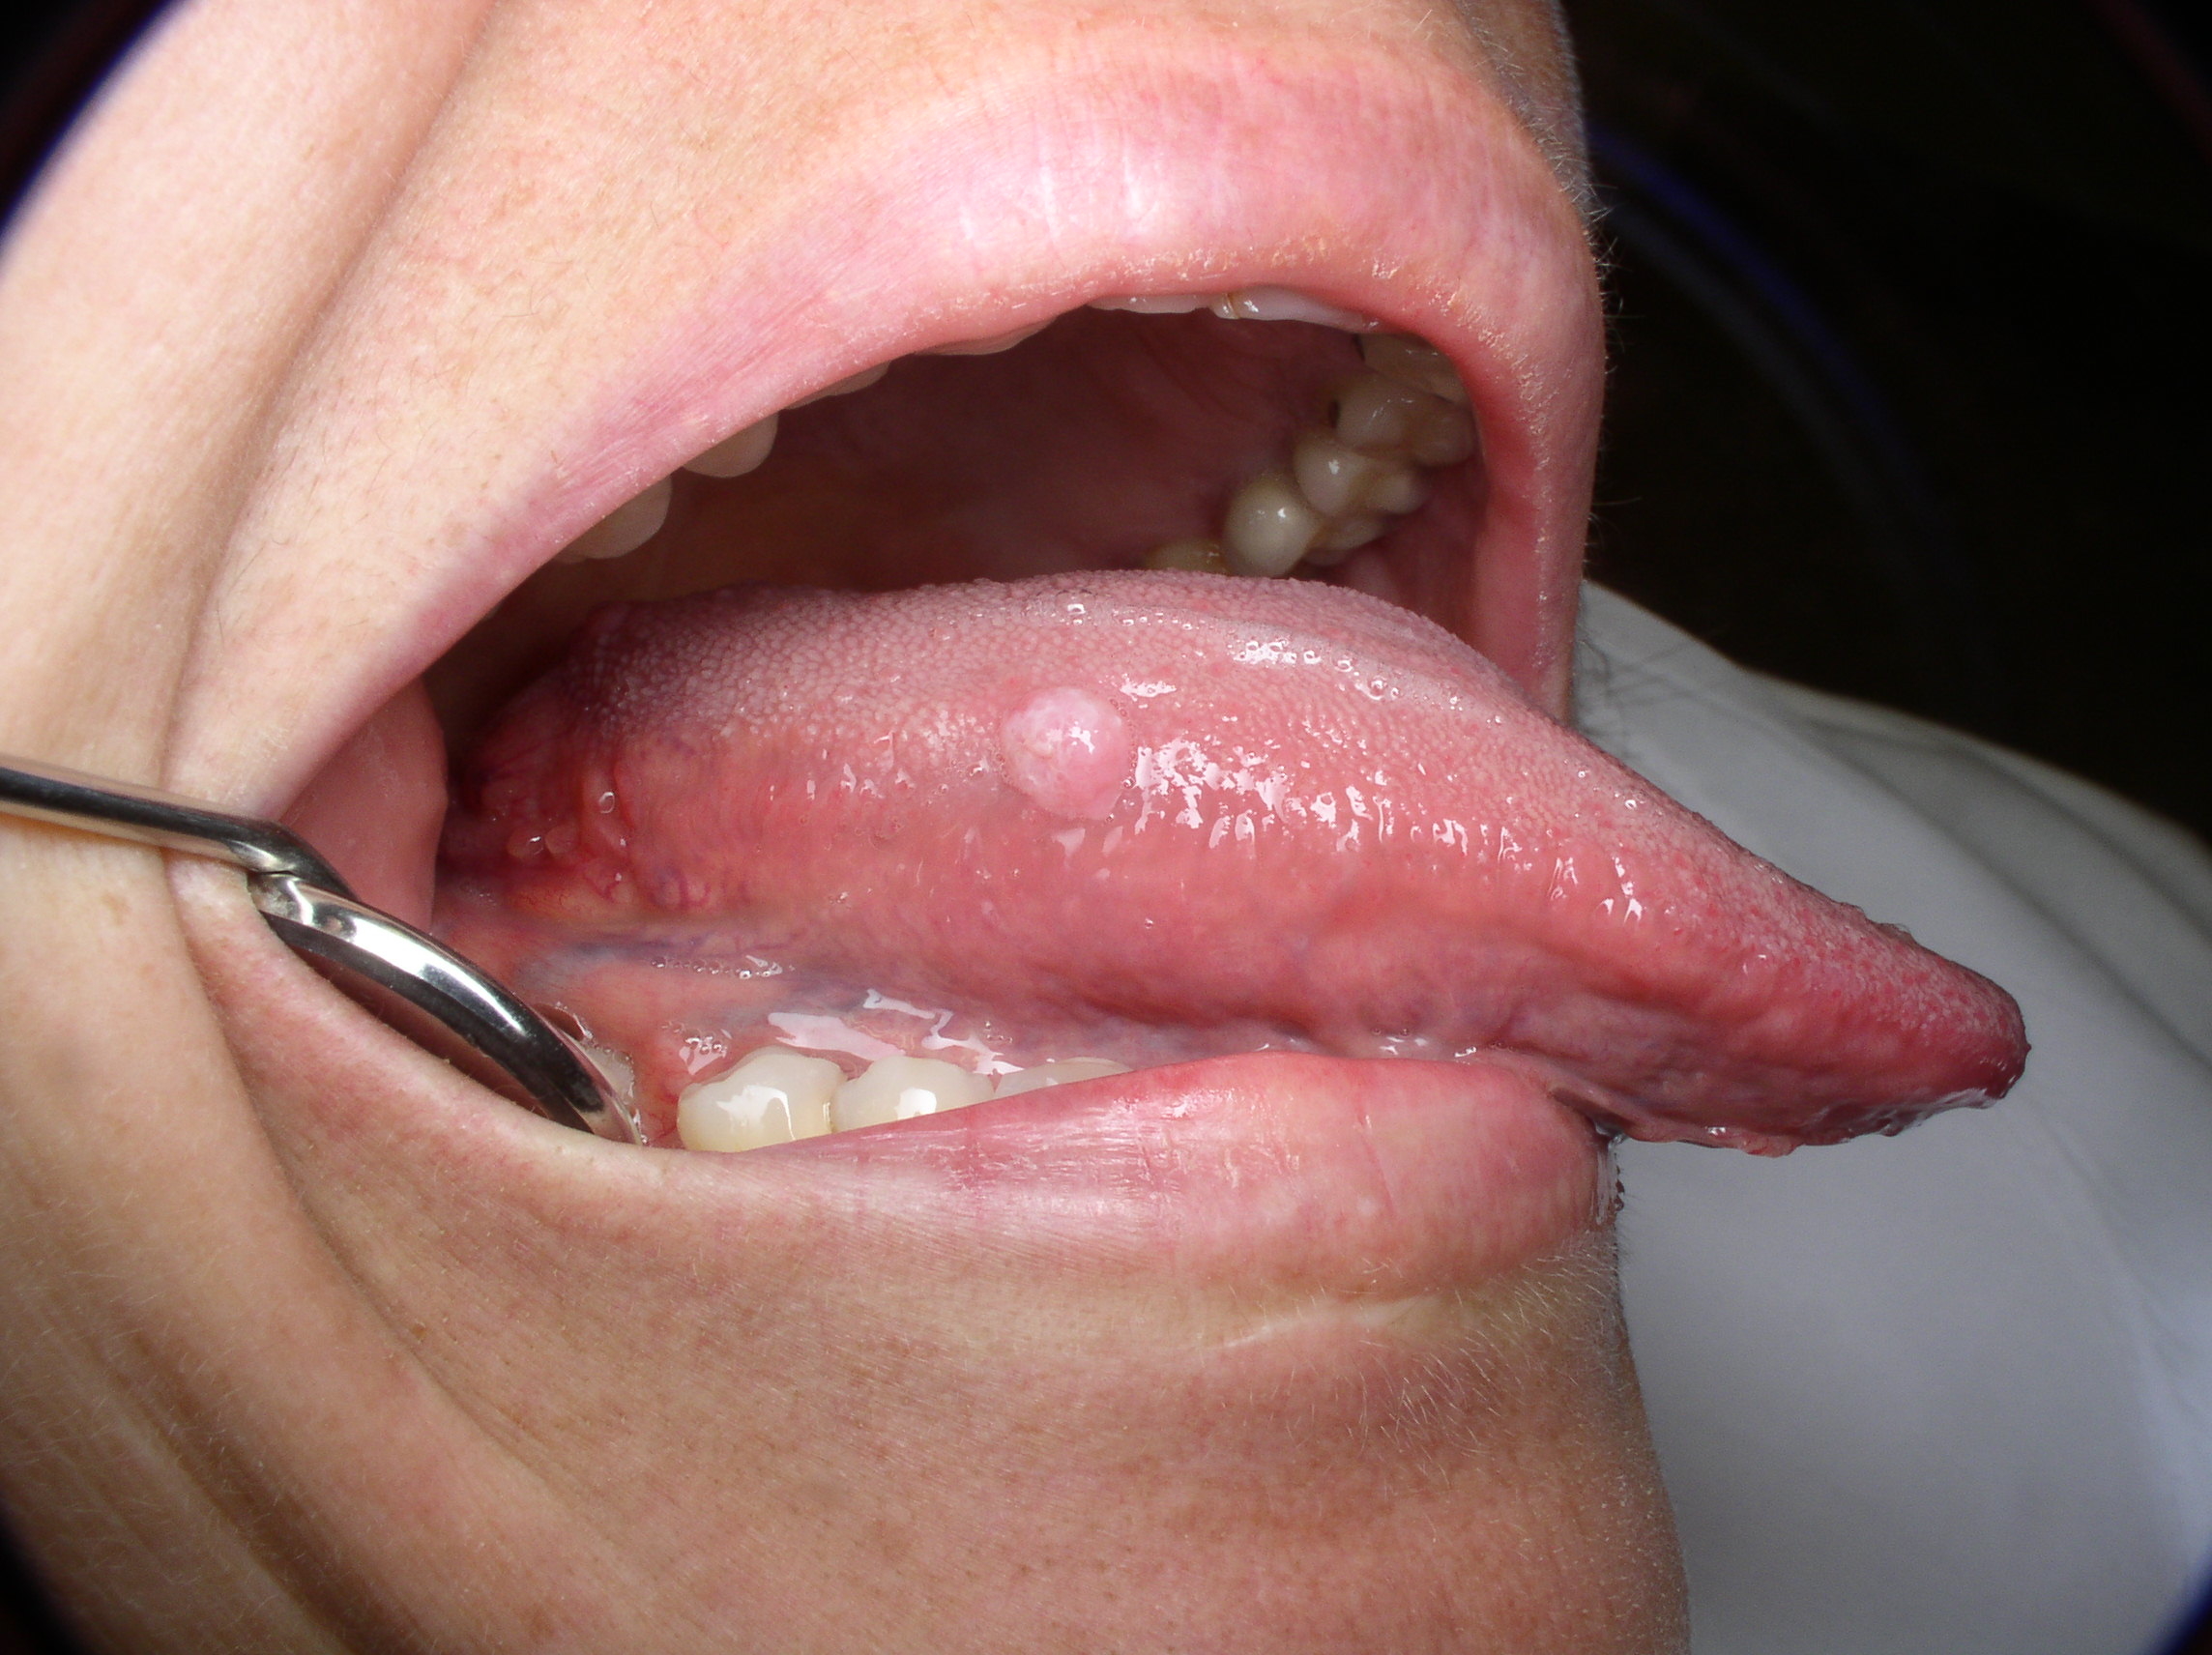 Squamous papilloma tongue symptoms - Papilloma tongue symptoms